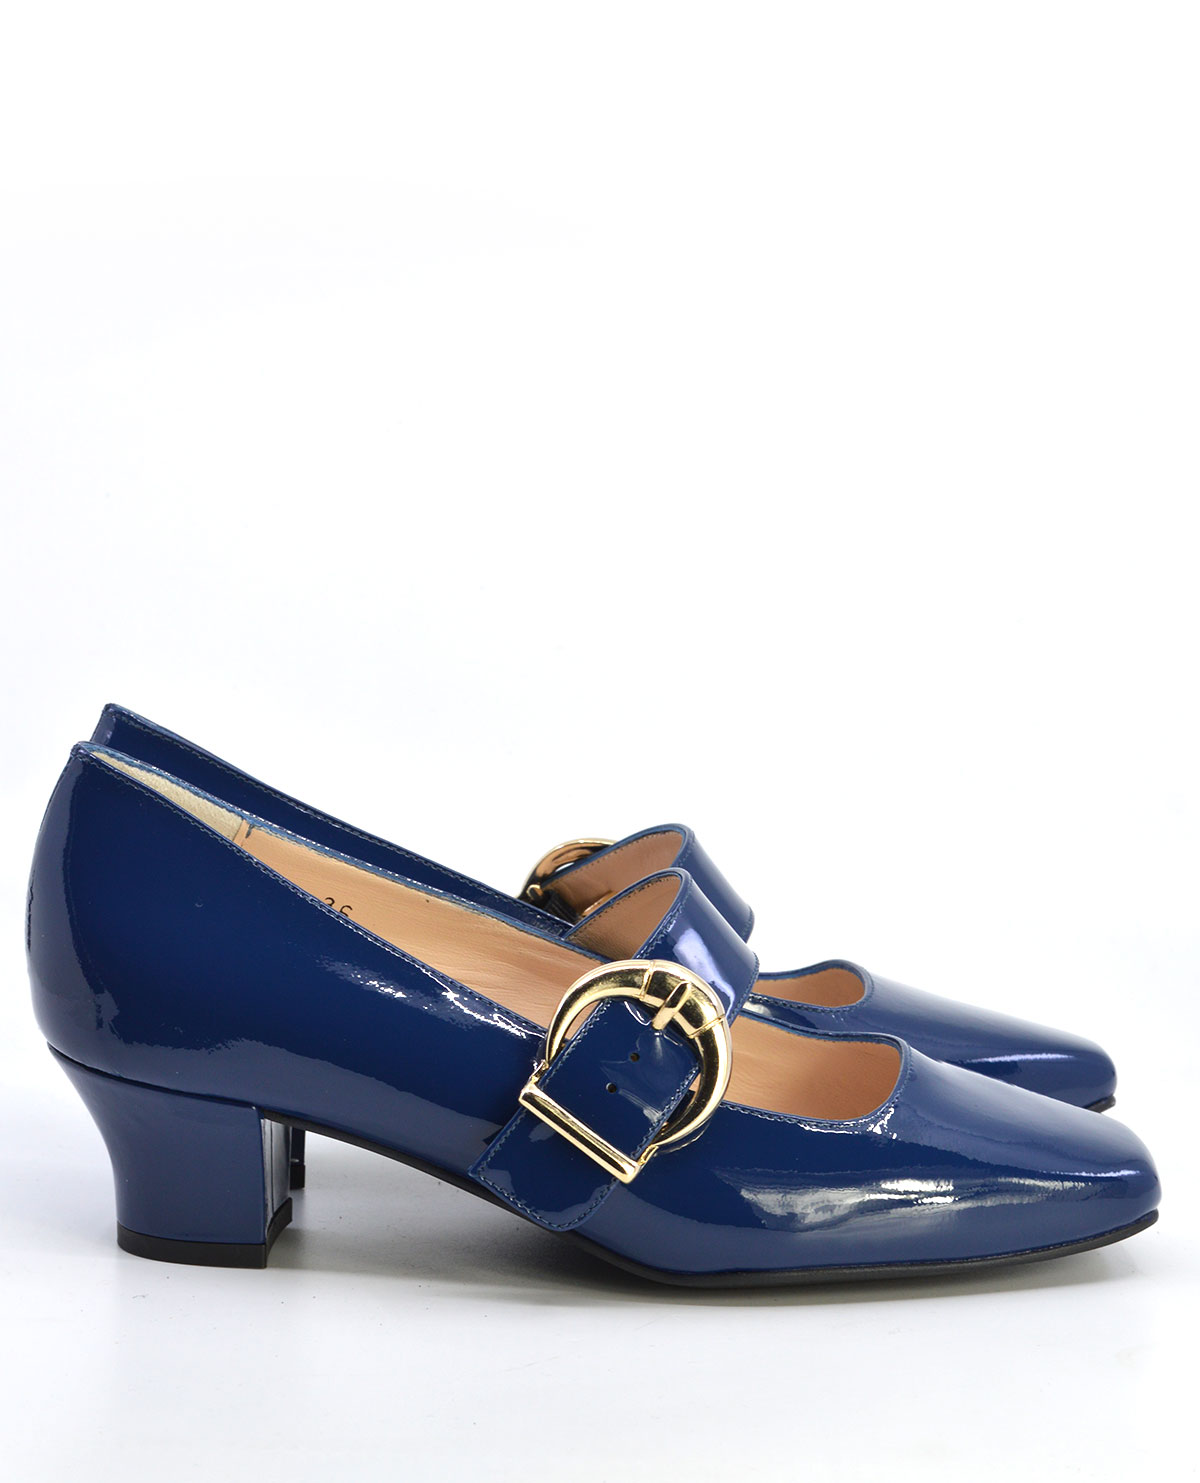 Cheap Navy Blue Shoes on Sale | bellvalefarms.com